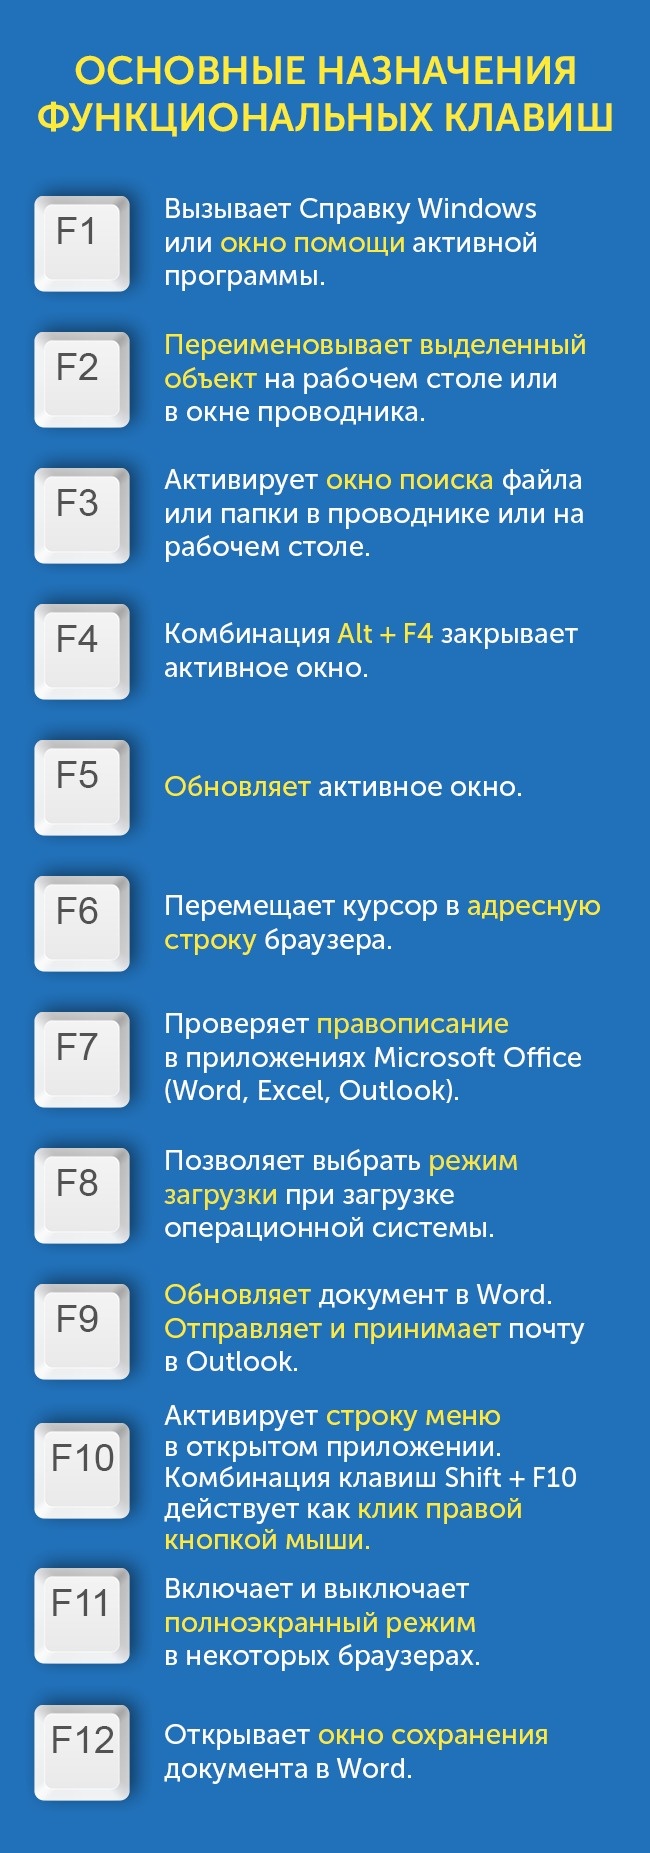 Функціональні клавищи F1 до F12